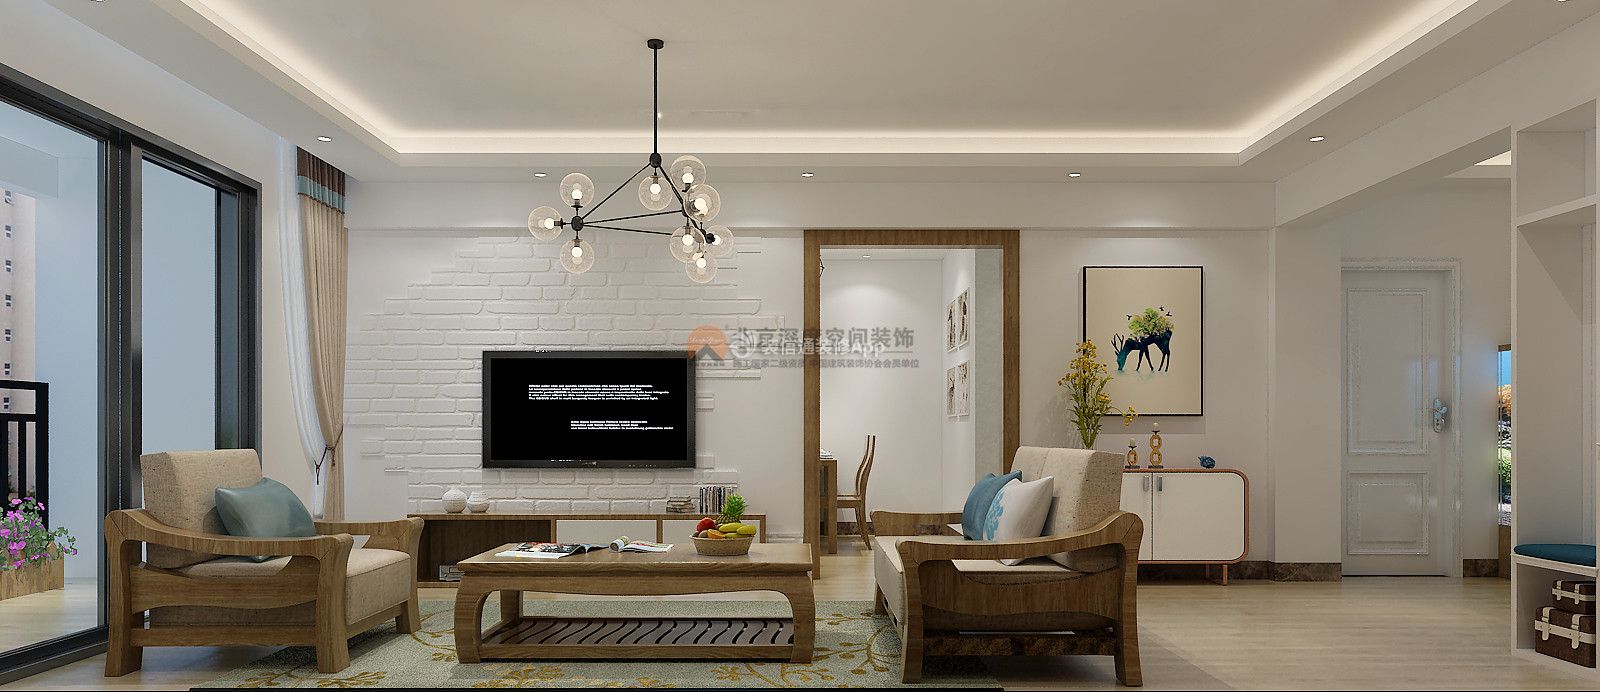 新中式风格客厅家具沙发椅摆放设计效果图片